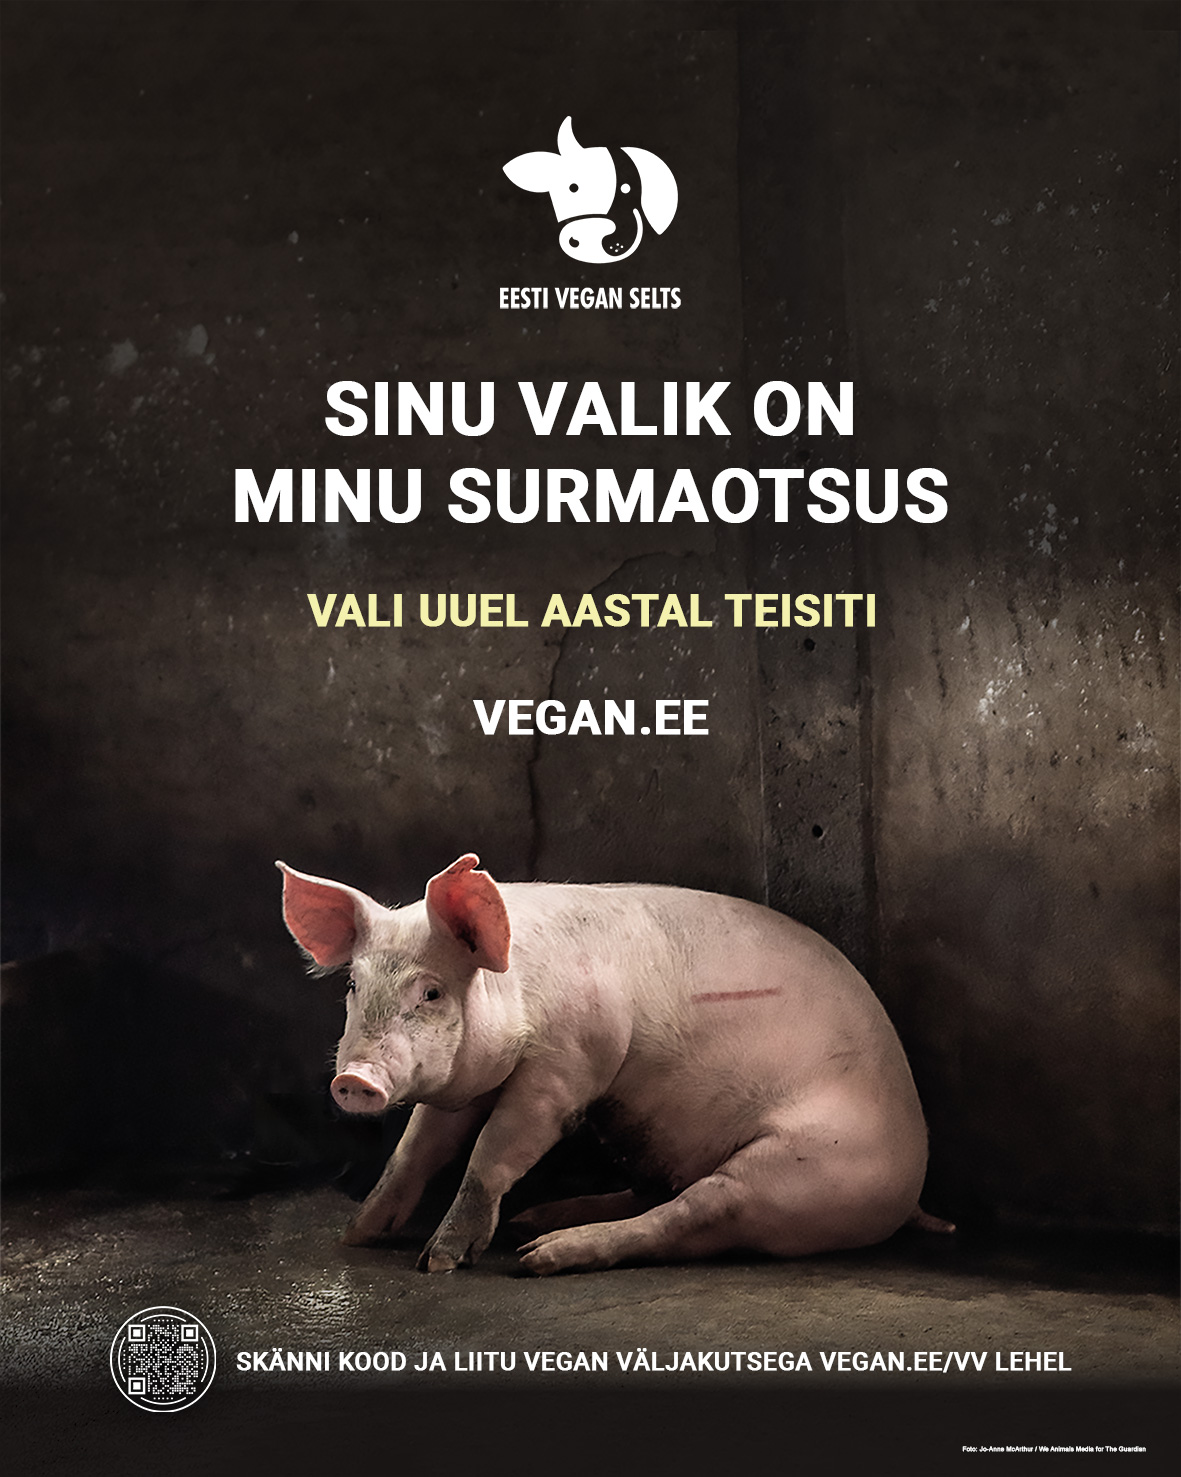 Uus aasta tõi tänavatele plakatid veganlusest